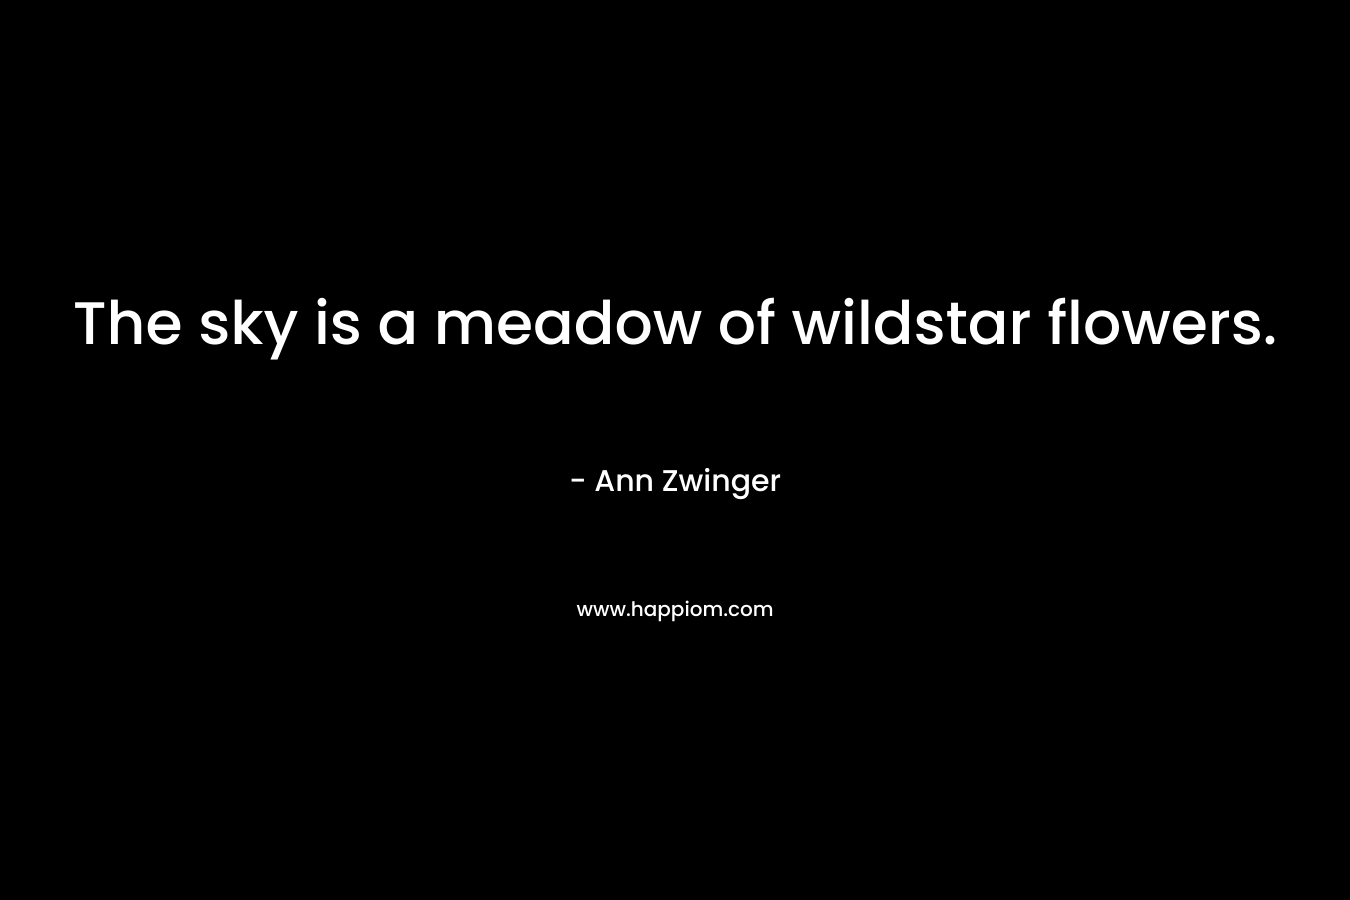 The sky is a meadow of wildstar flowers. – Ann Zwinger